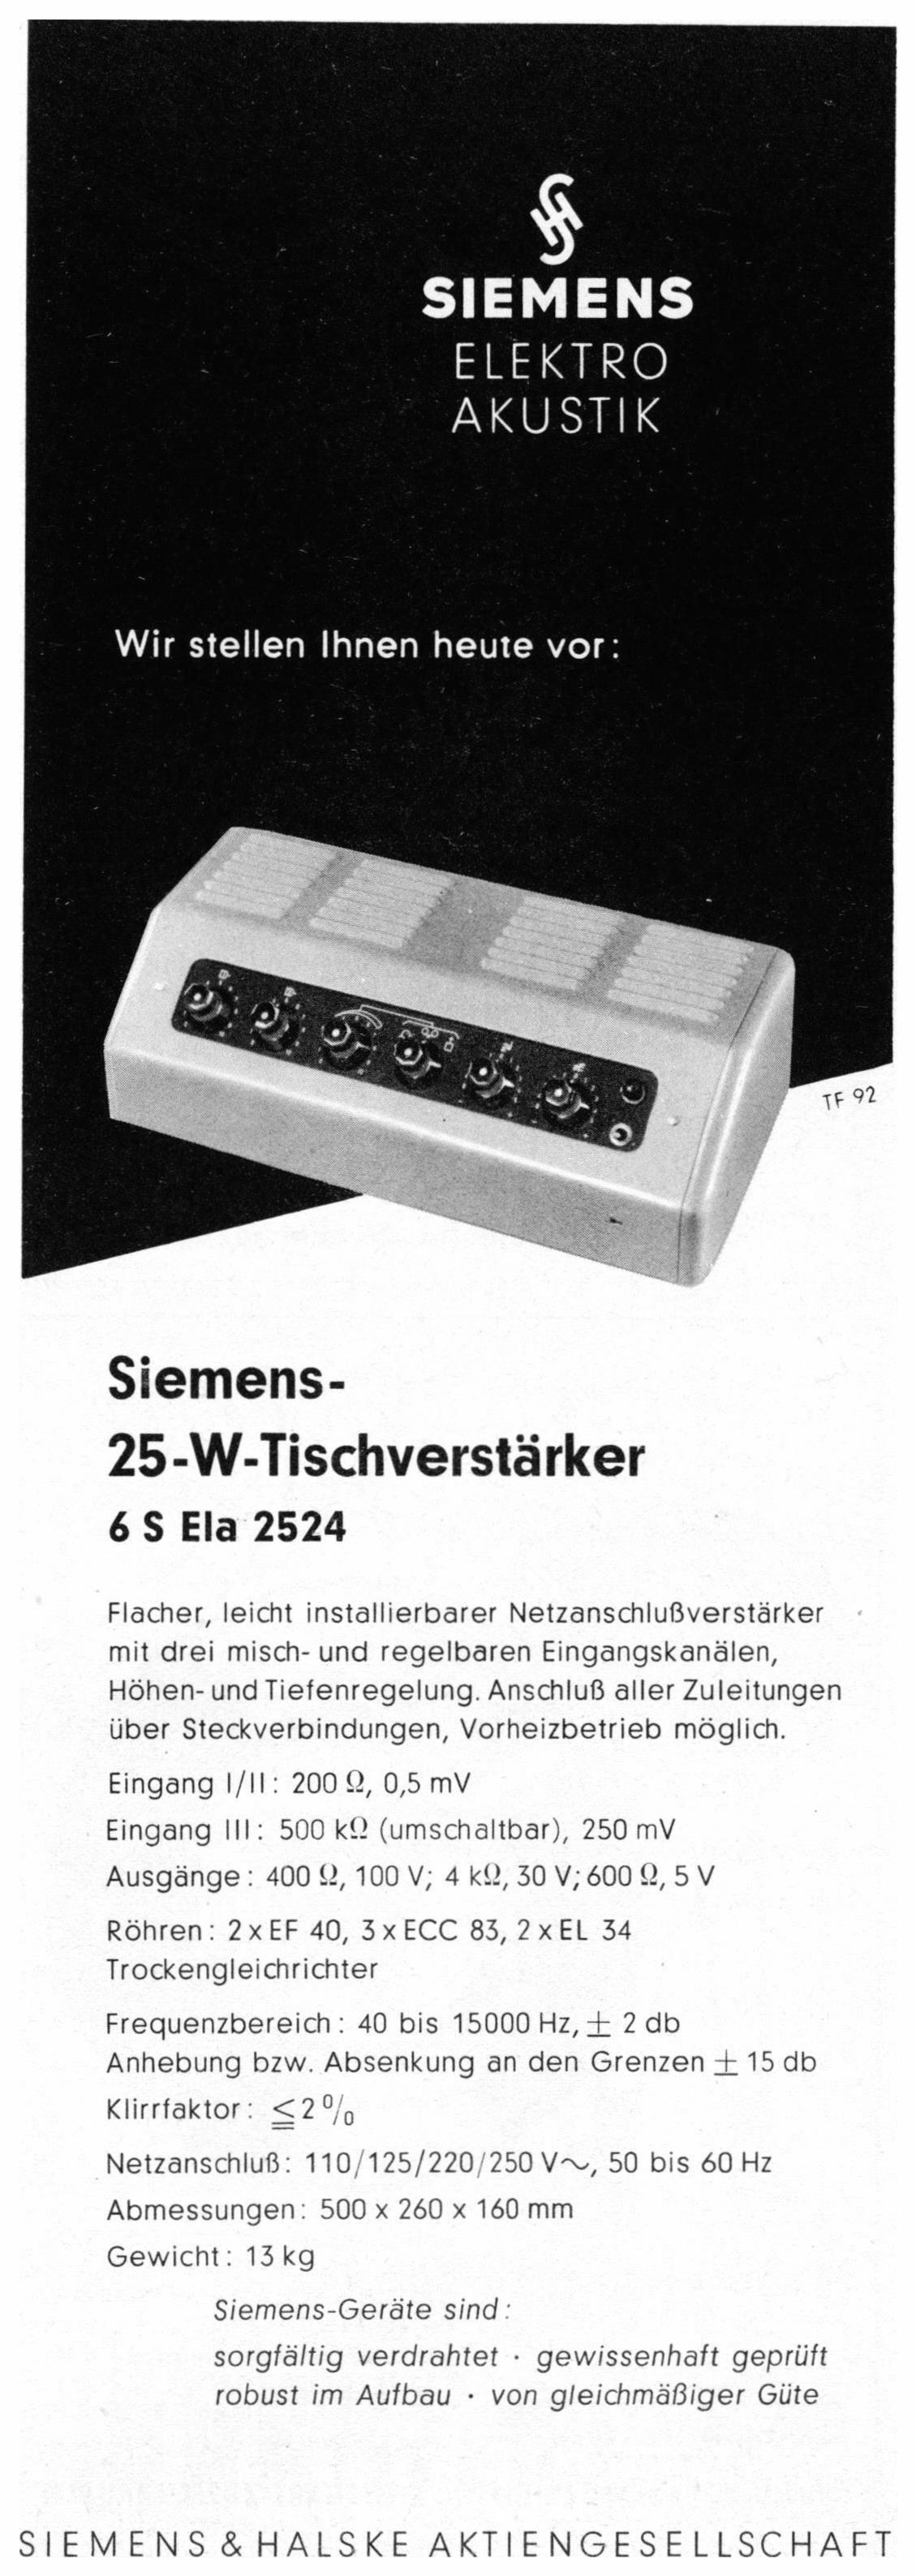 Siemens 1957 4.jpg